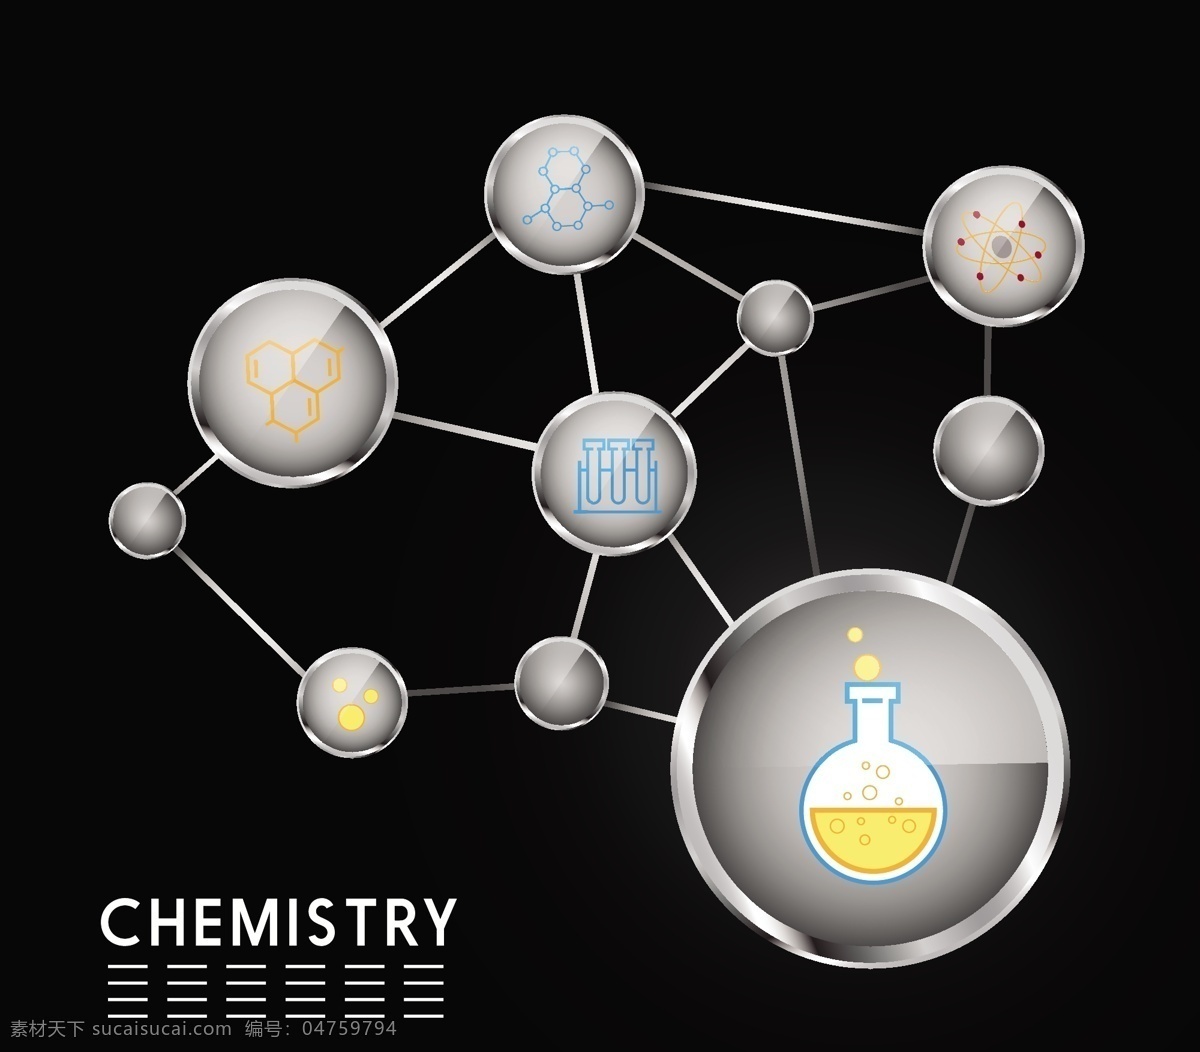 化学 分子 背景 图 广告背景 广告 背景素材 底纹背景 背景图 圆形 黑色背景 底纹 科学 科技